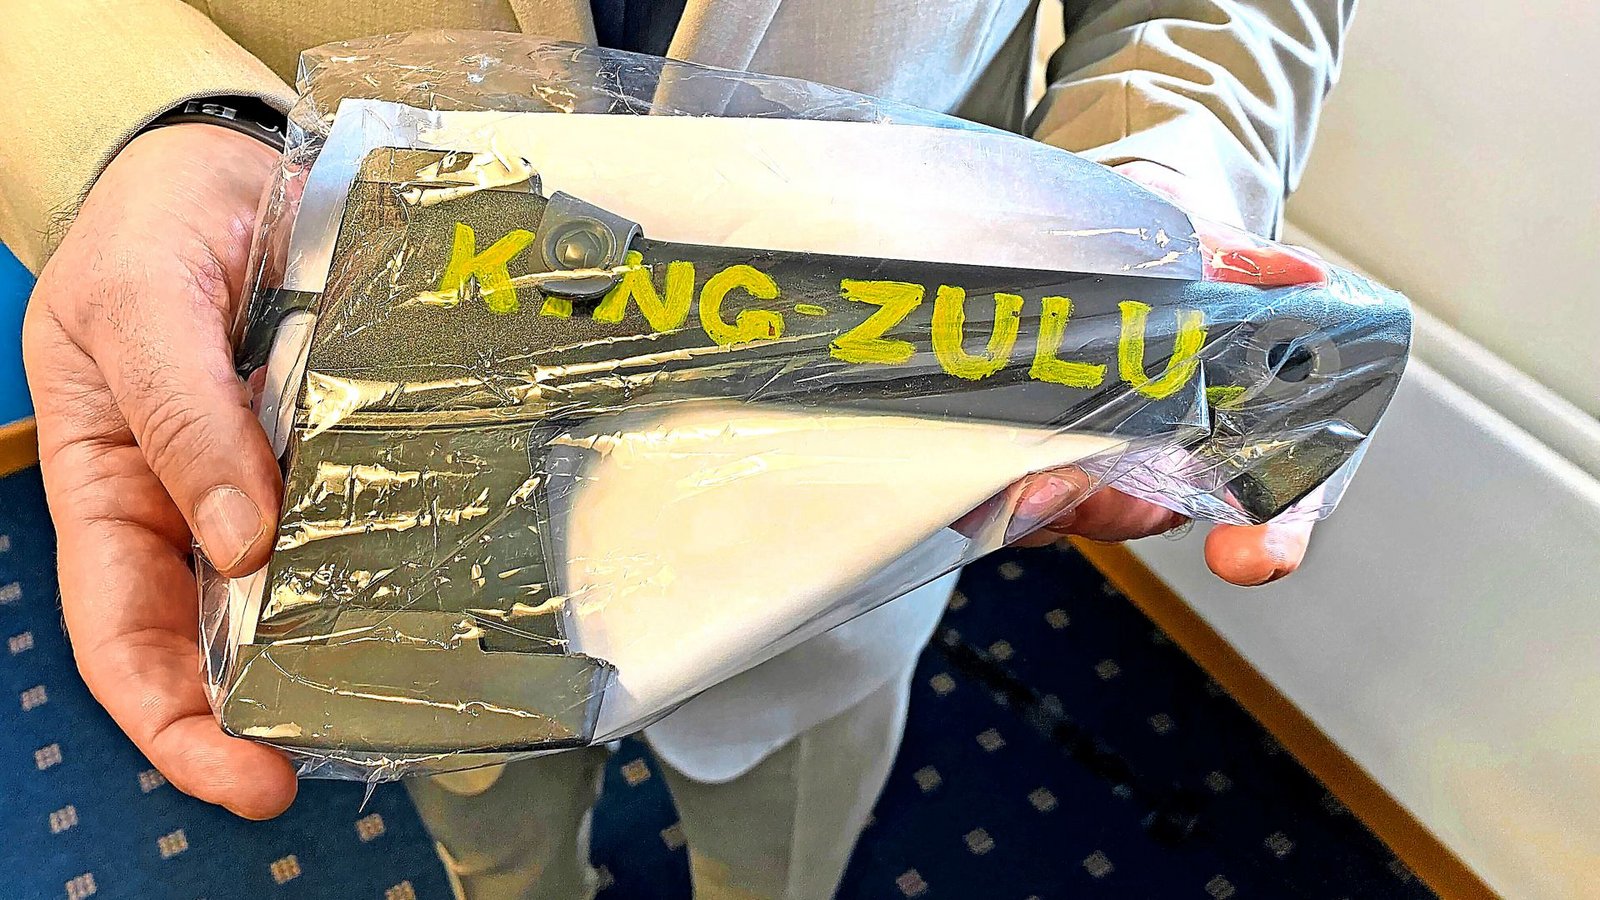 Ein Ermittler hält eine schwarze Axt mit der Aufschrift „King Zulu“ in den Händen. Sie gilt als Symbol für die kriminelle Black-Axe-Organisation.Foto: dpa/Britta Schultejans